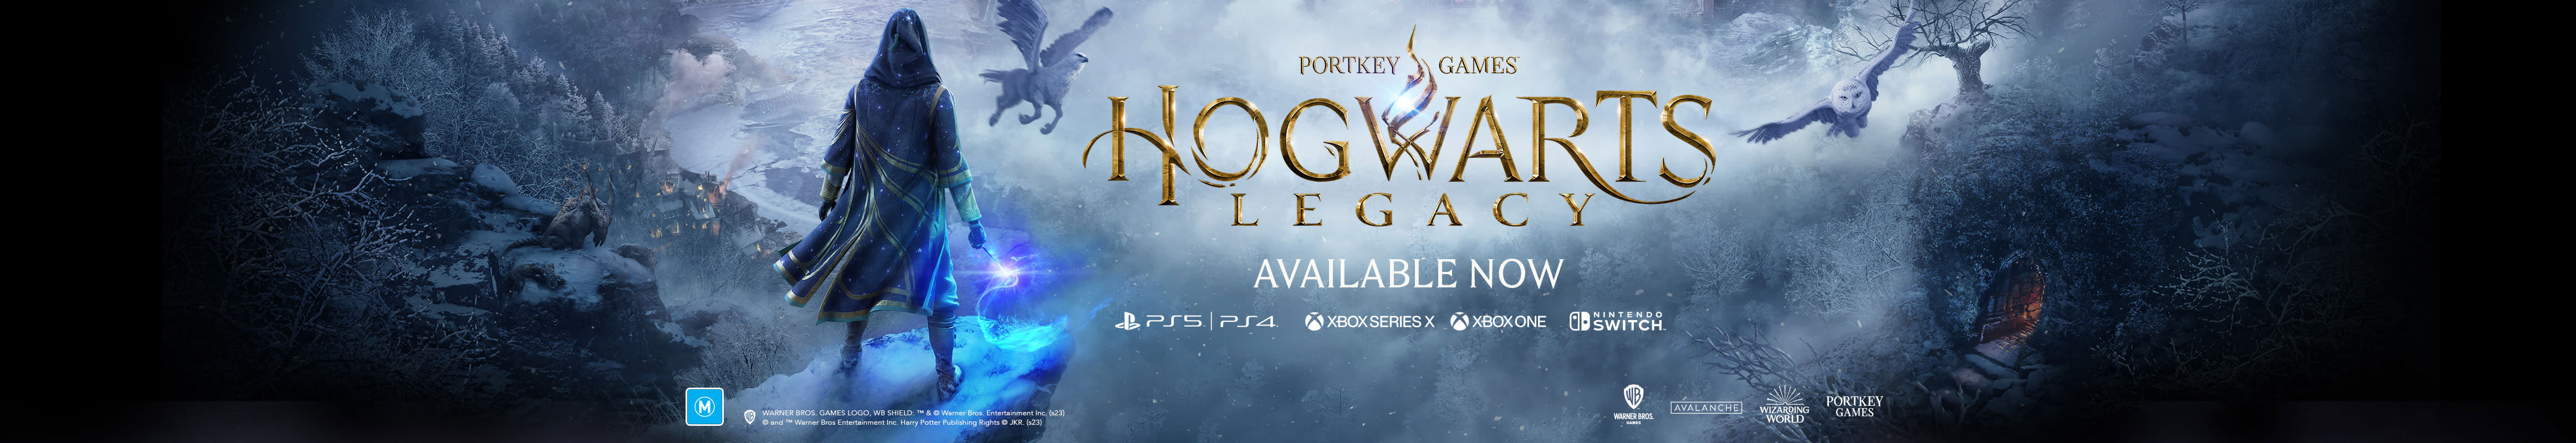 Hogwarts Legacy - PlayStation 4 - EB Games Australia